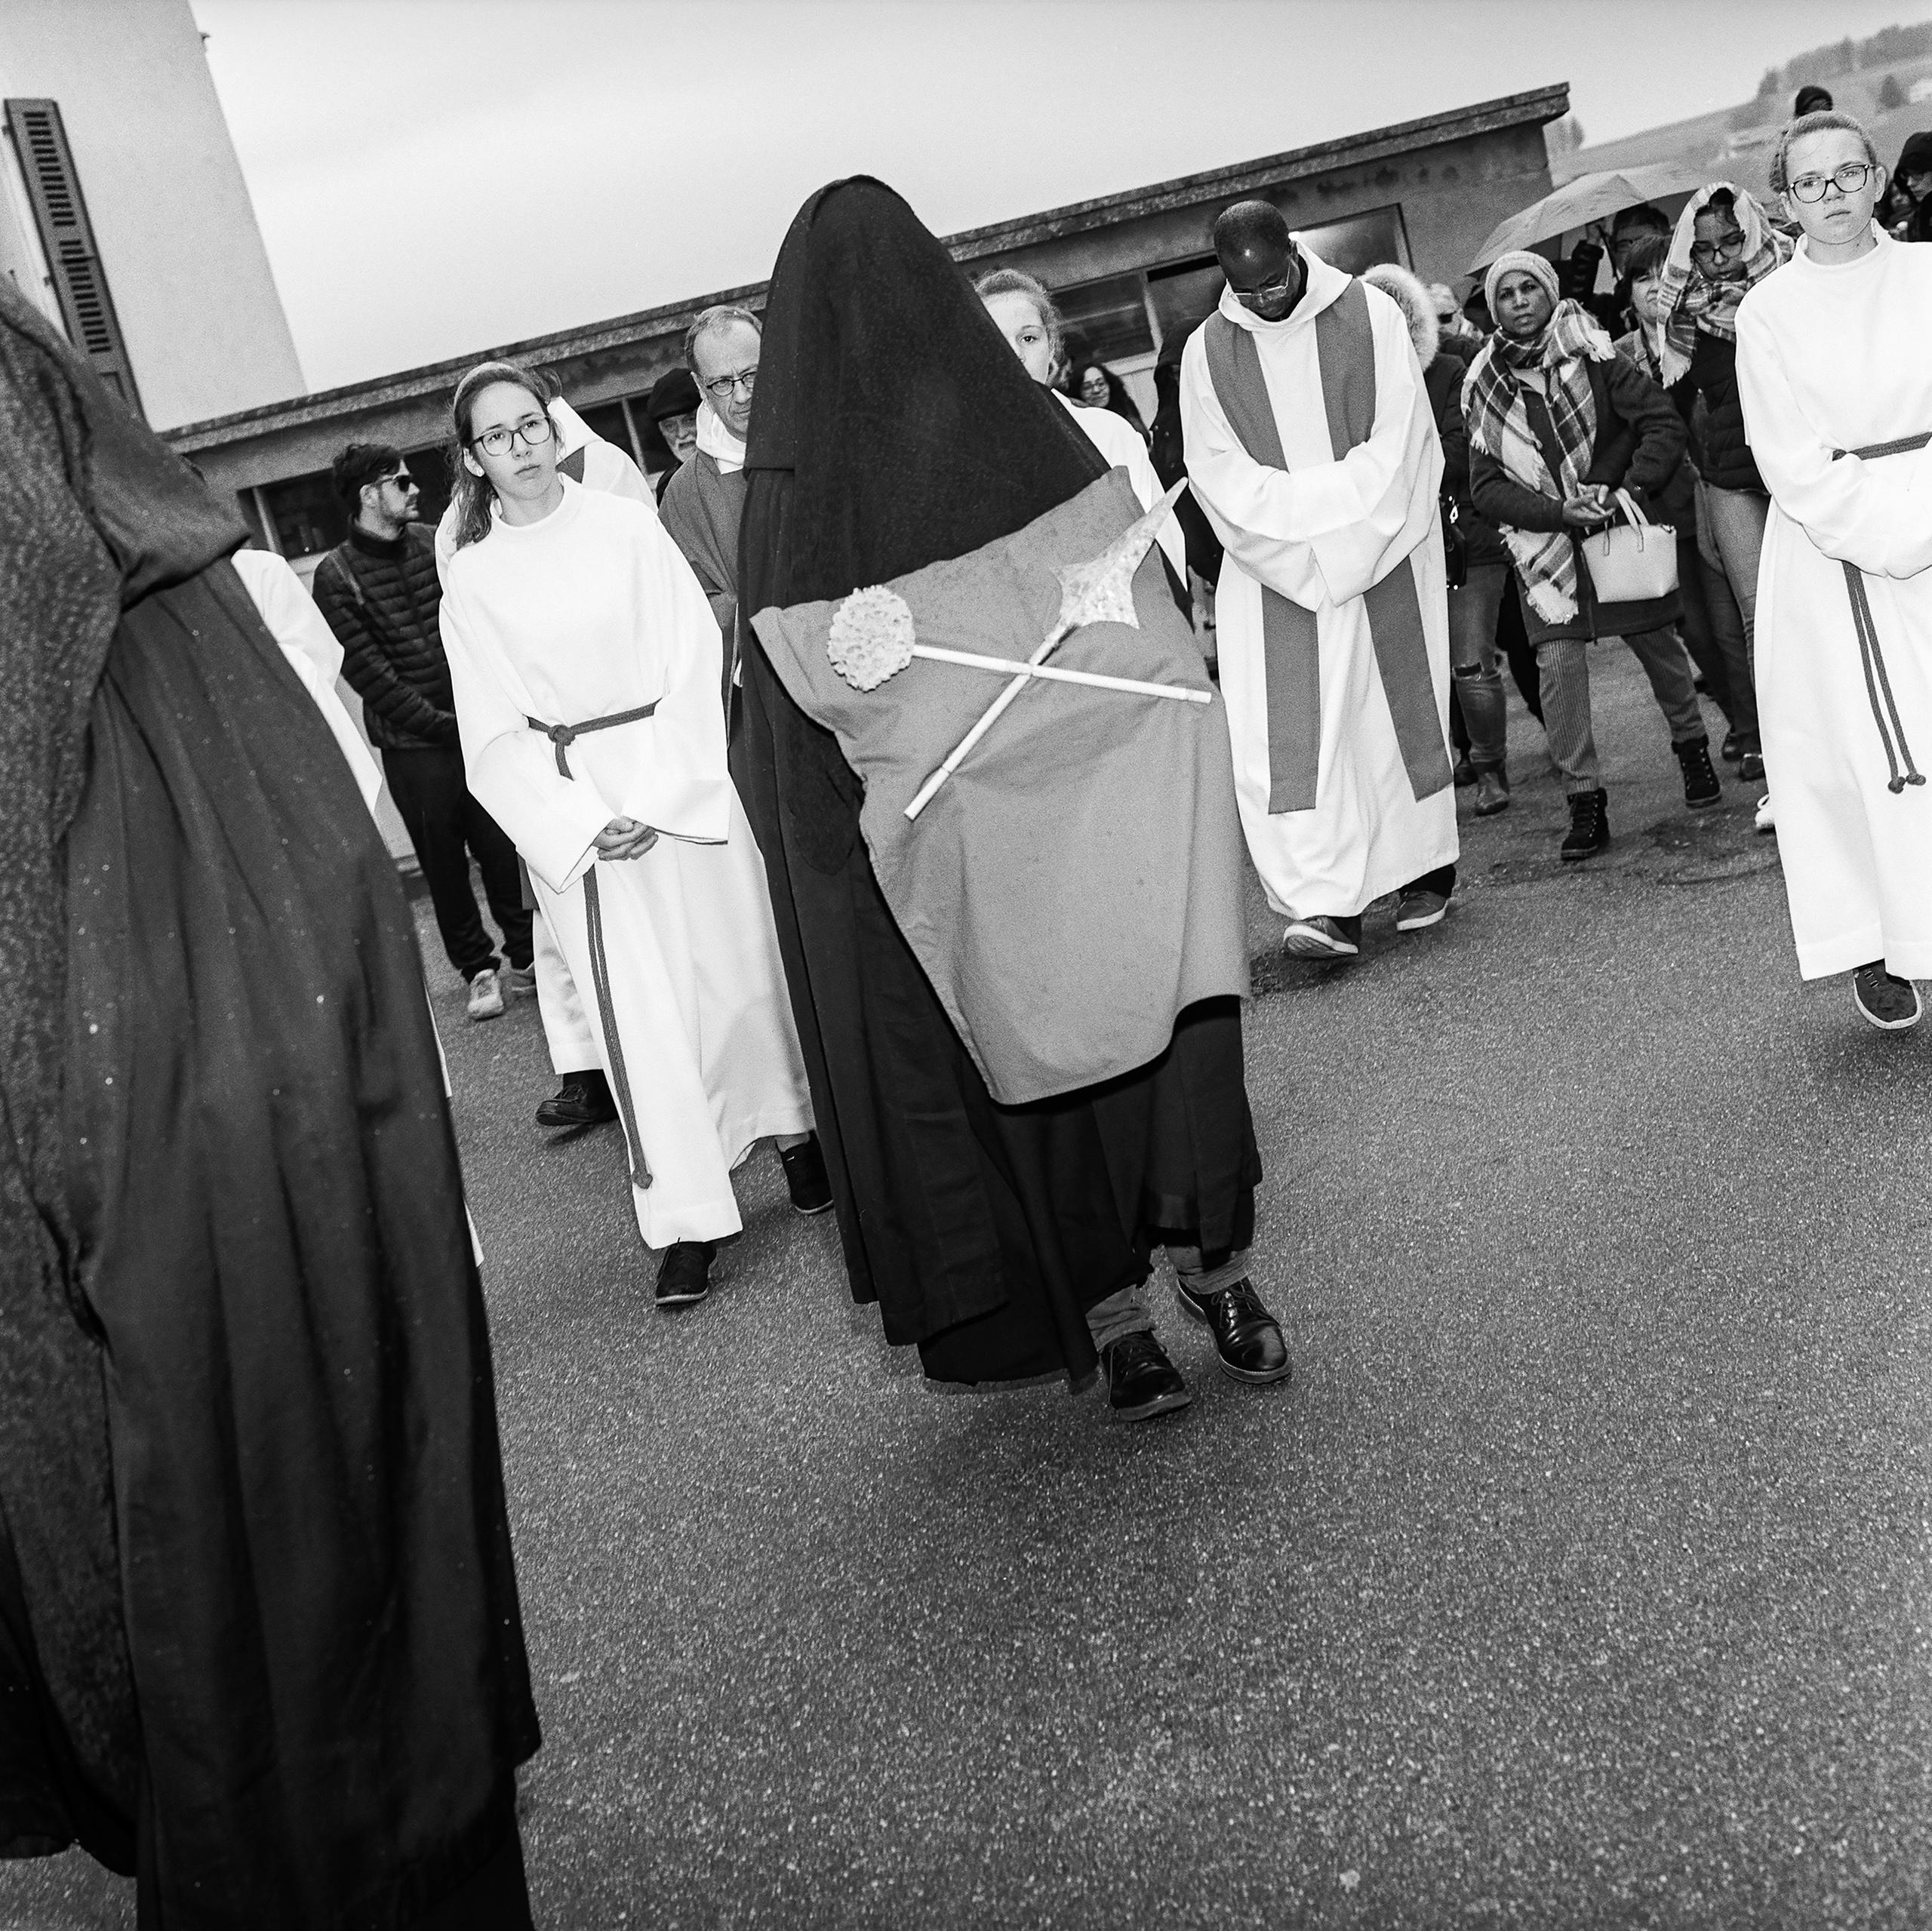 Frau in Schwarz trägt Lanze und Schwamm, dahinter laufen Kirchenleute in Weiss